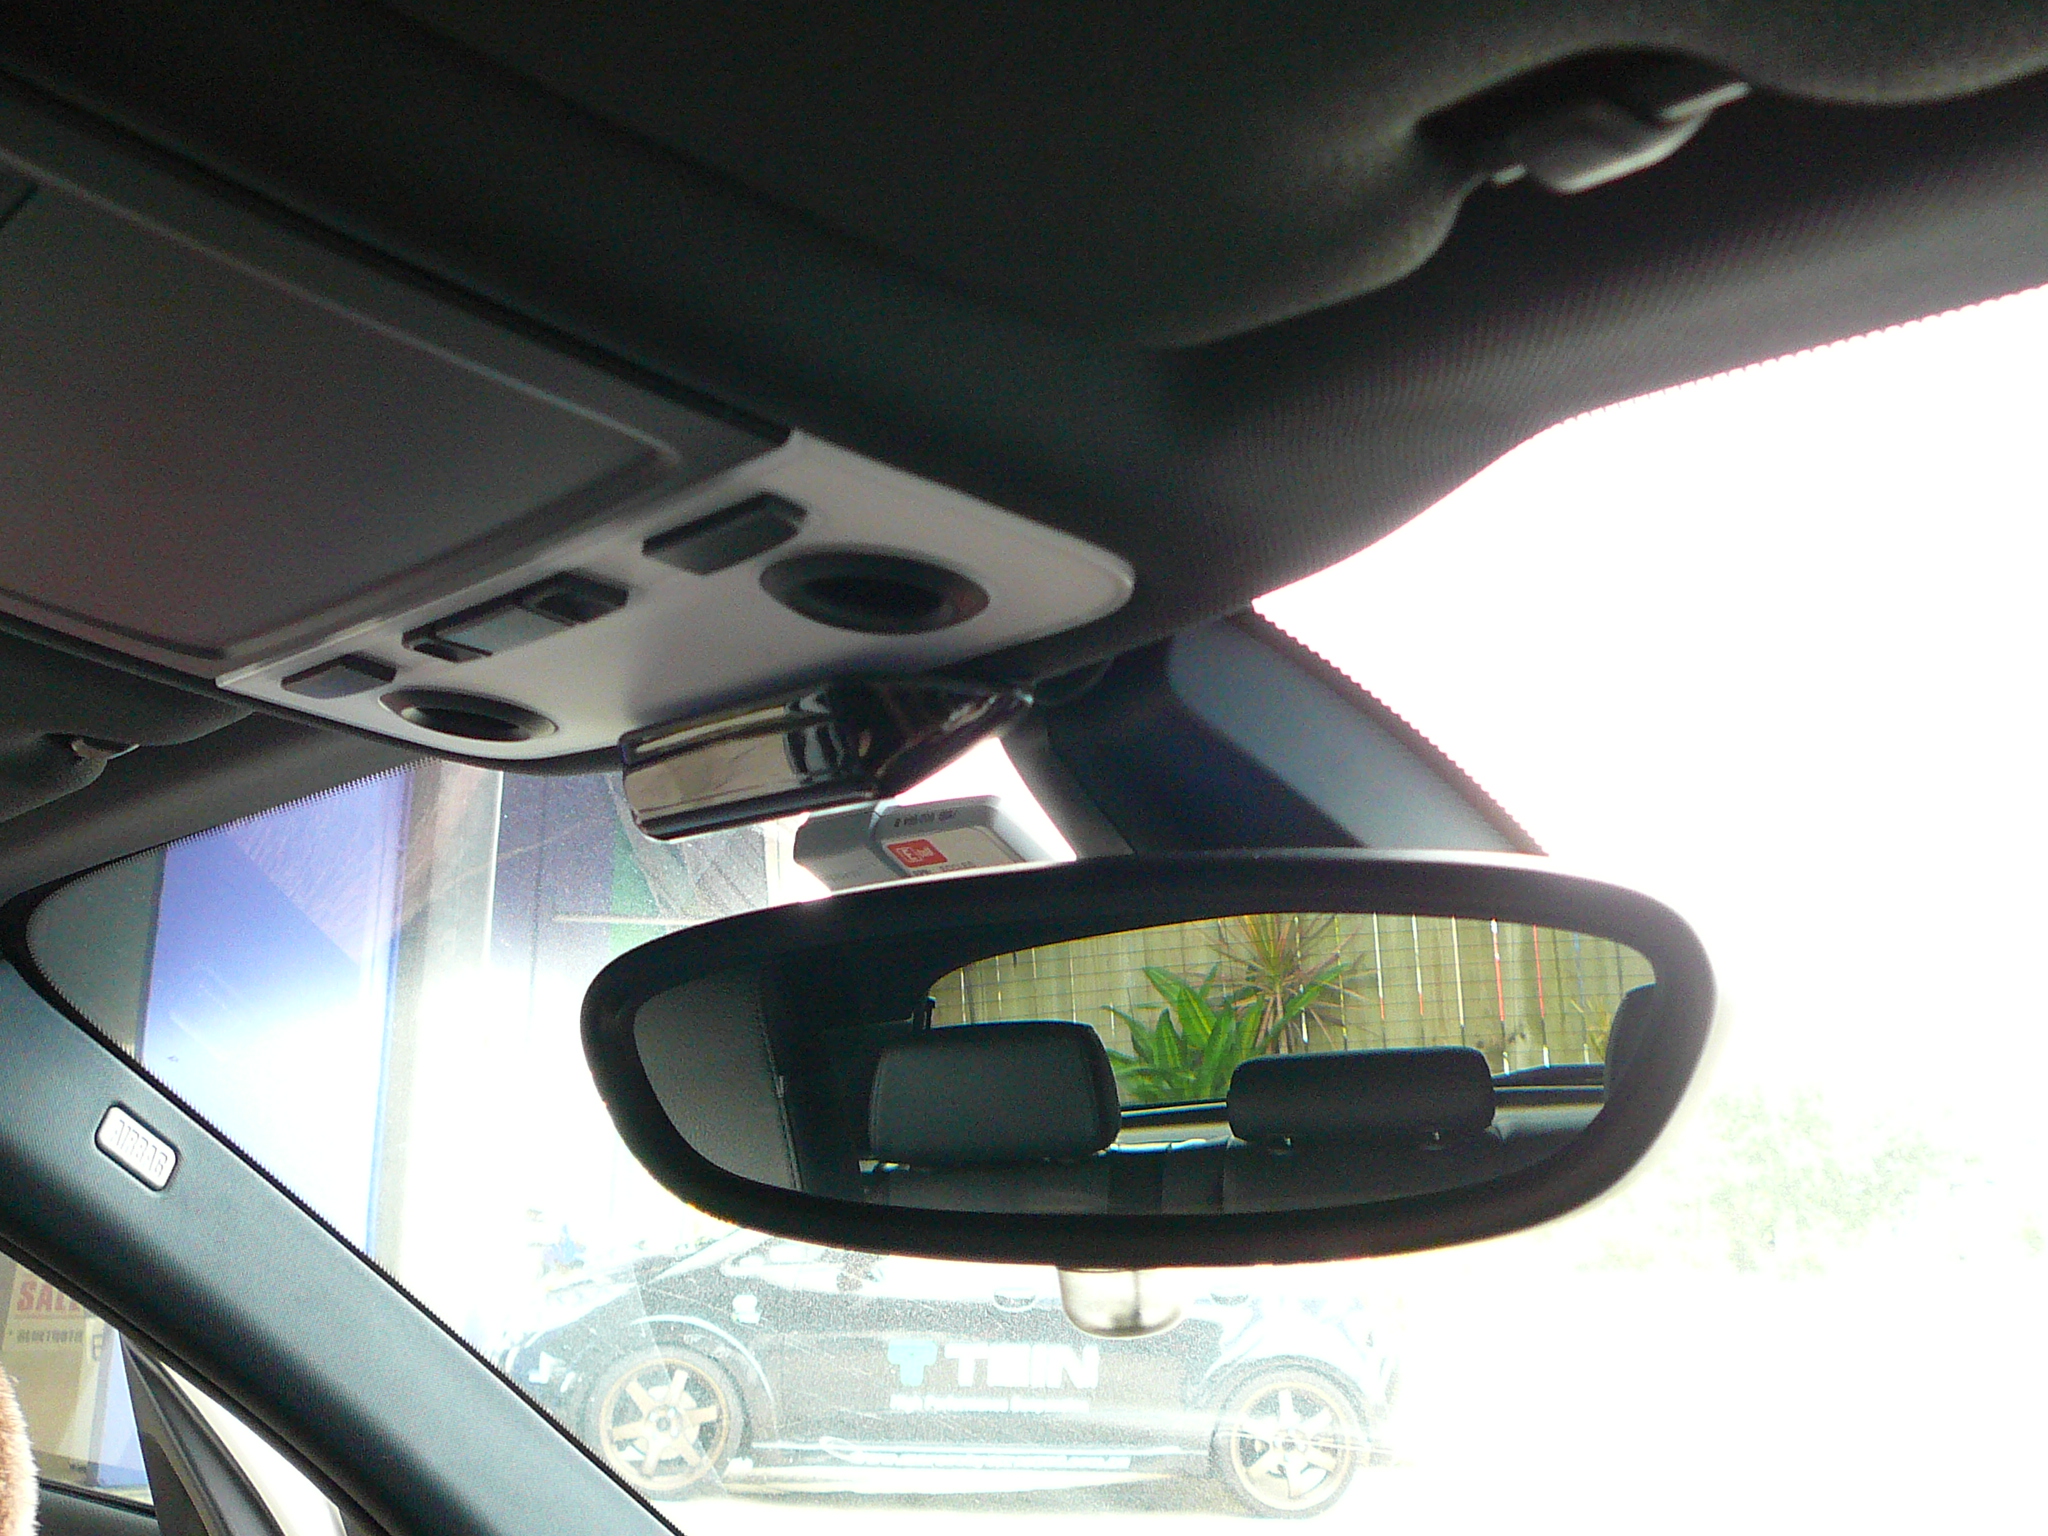 BMW 318d Front Parking Sensors